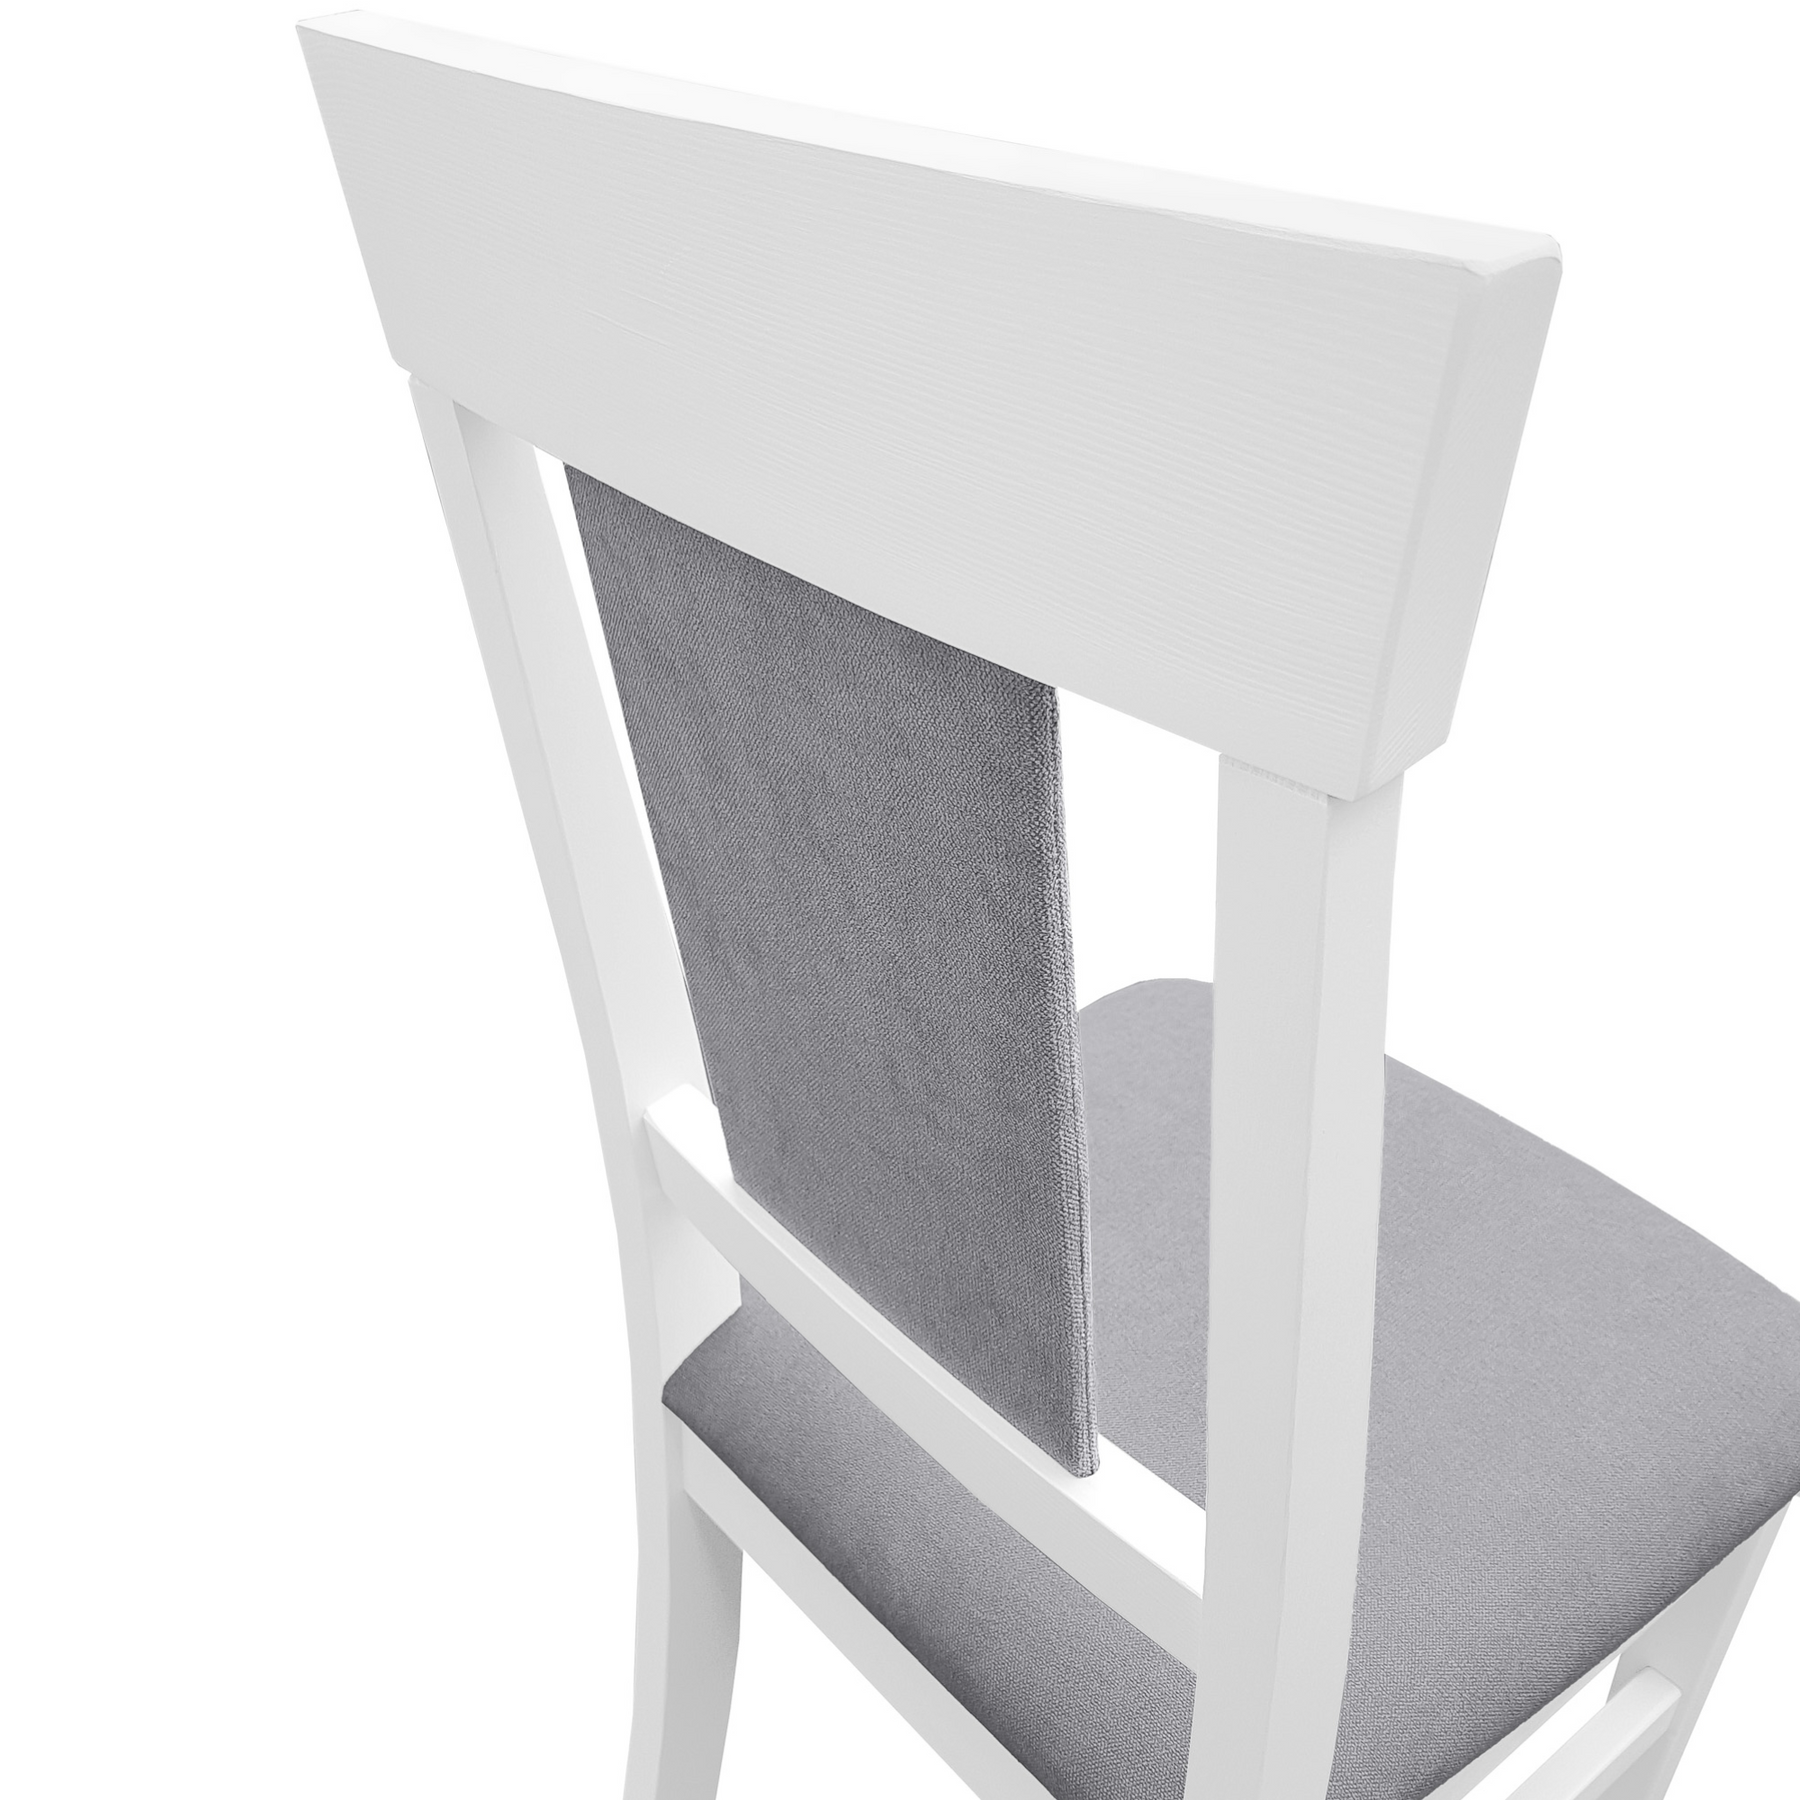  Stabiler Holzstuhl aus massiver Kiefer, Modell 25 Bezug Grau, waschweiß lackiert, Modernes Design mit gepolstertem Sitz und Lehne